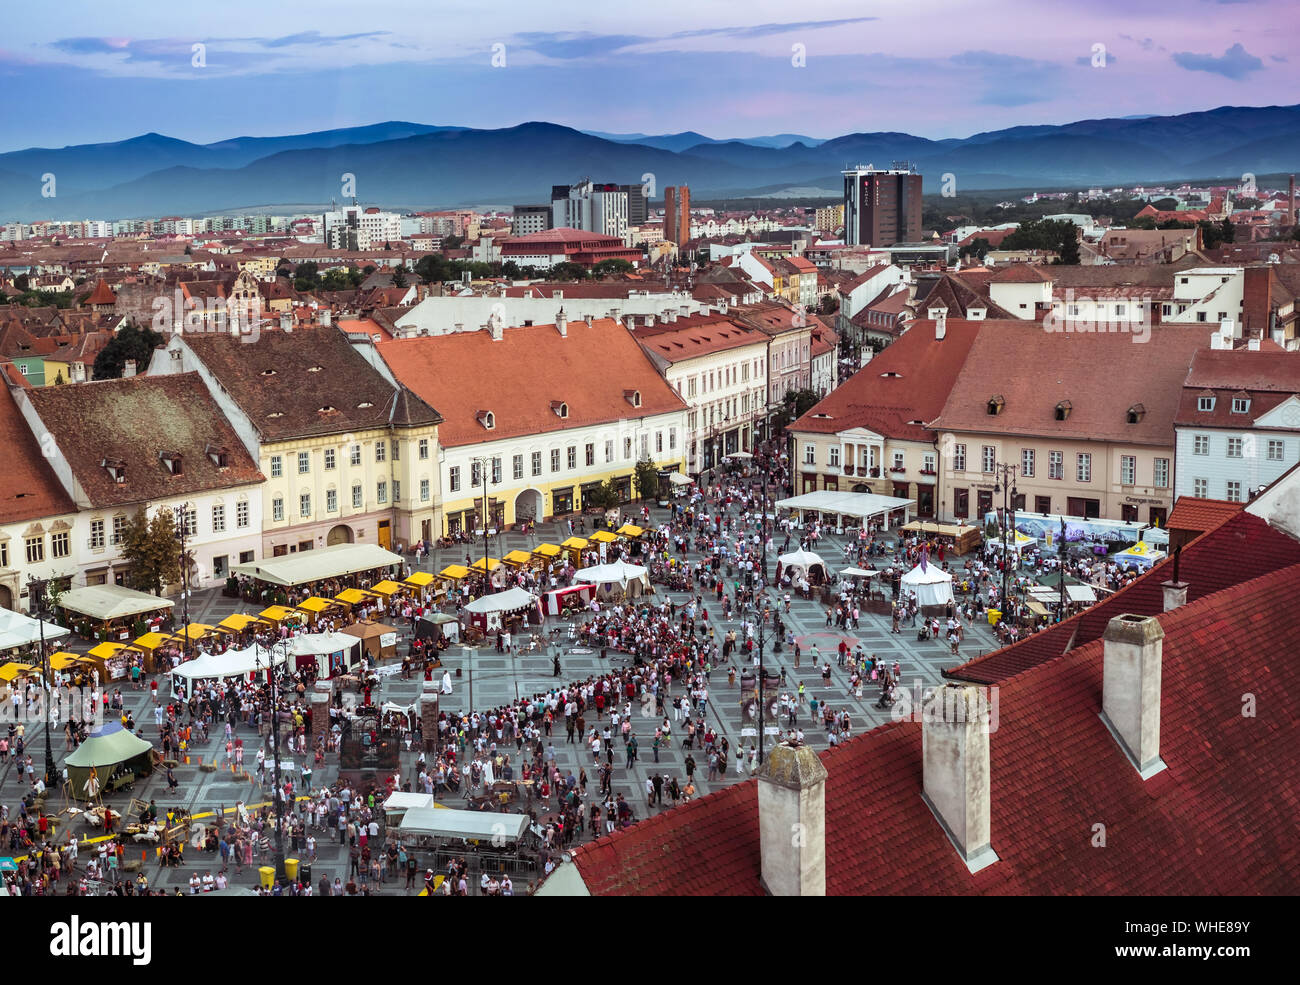 La ville de Sibiu, Roumanie - 25 août 2019. Vue aérienne sur la Grande Place de Sibiu, Roumanie, au cours de la Fête médiévale 2019 Banque D'Images